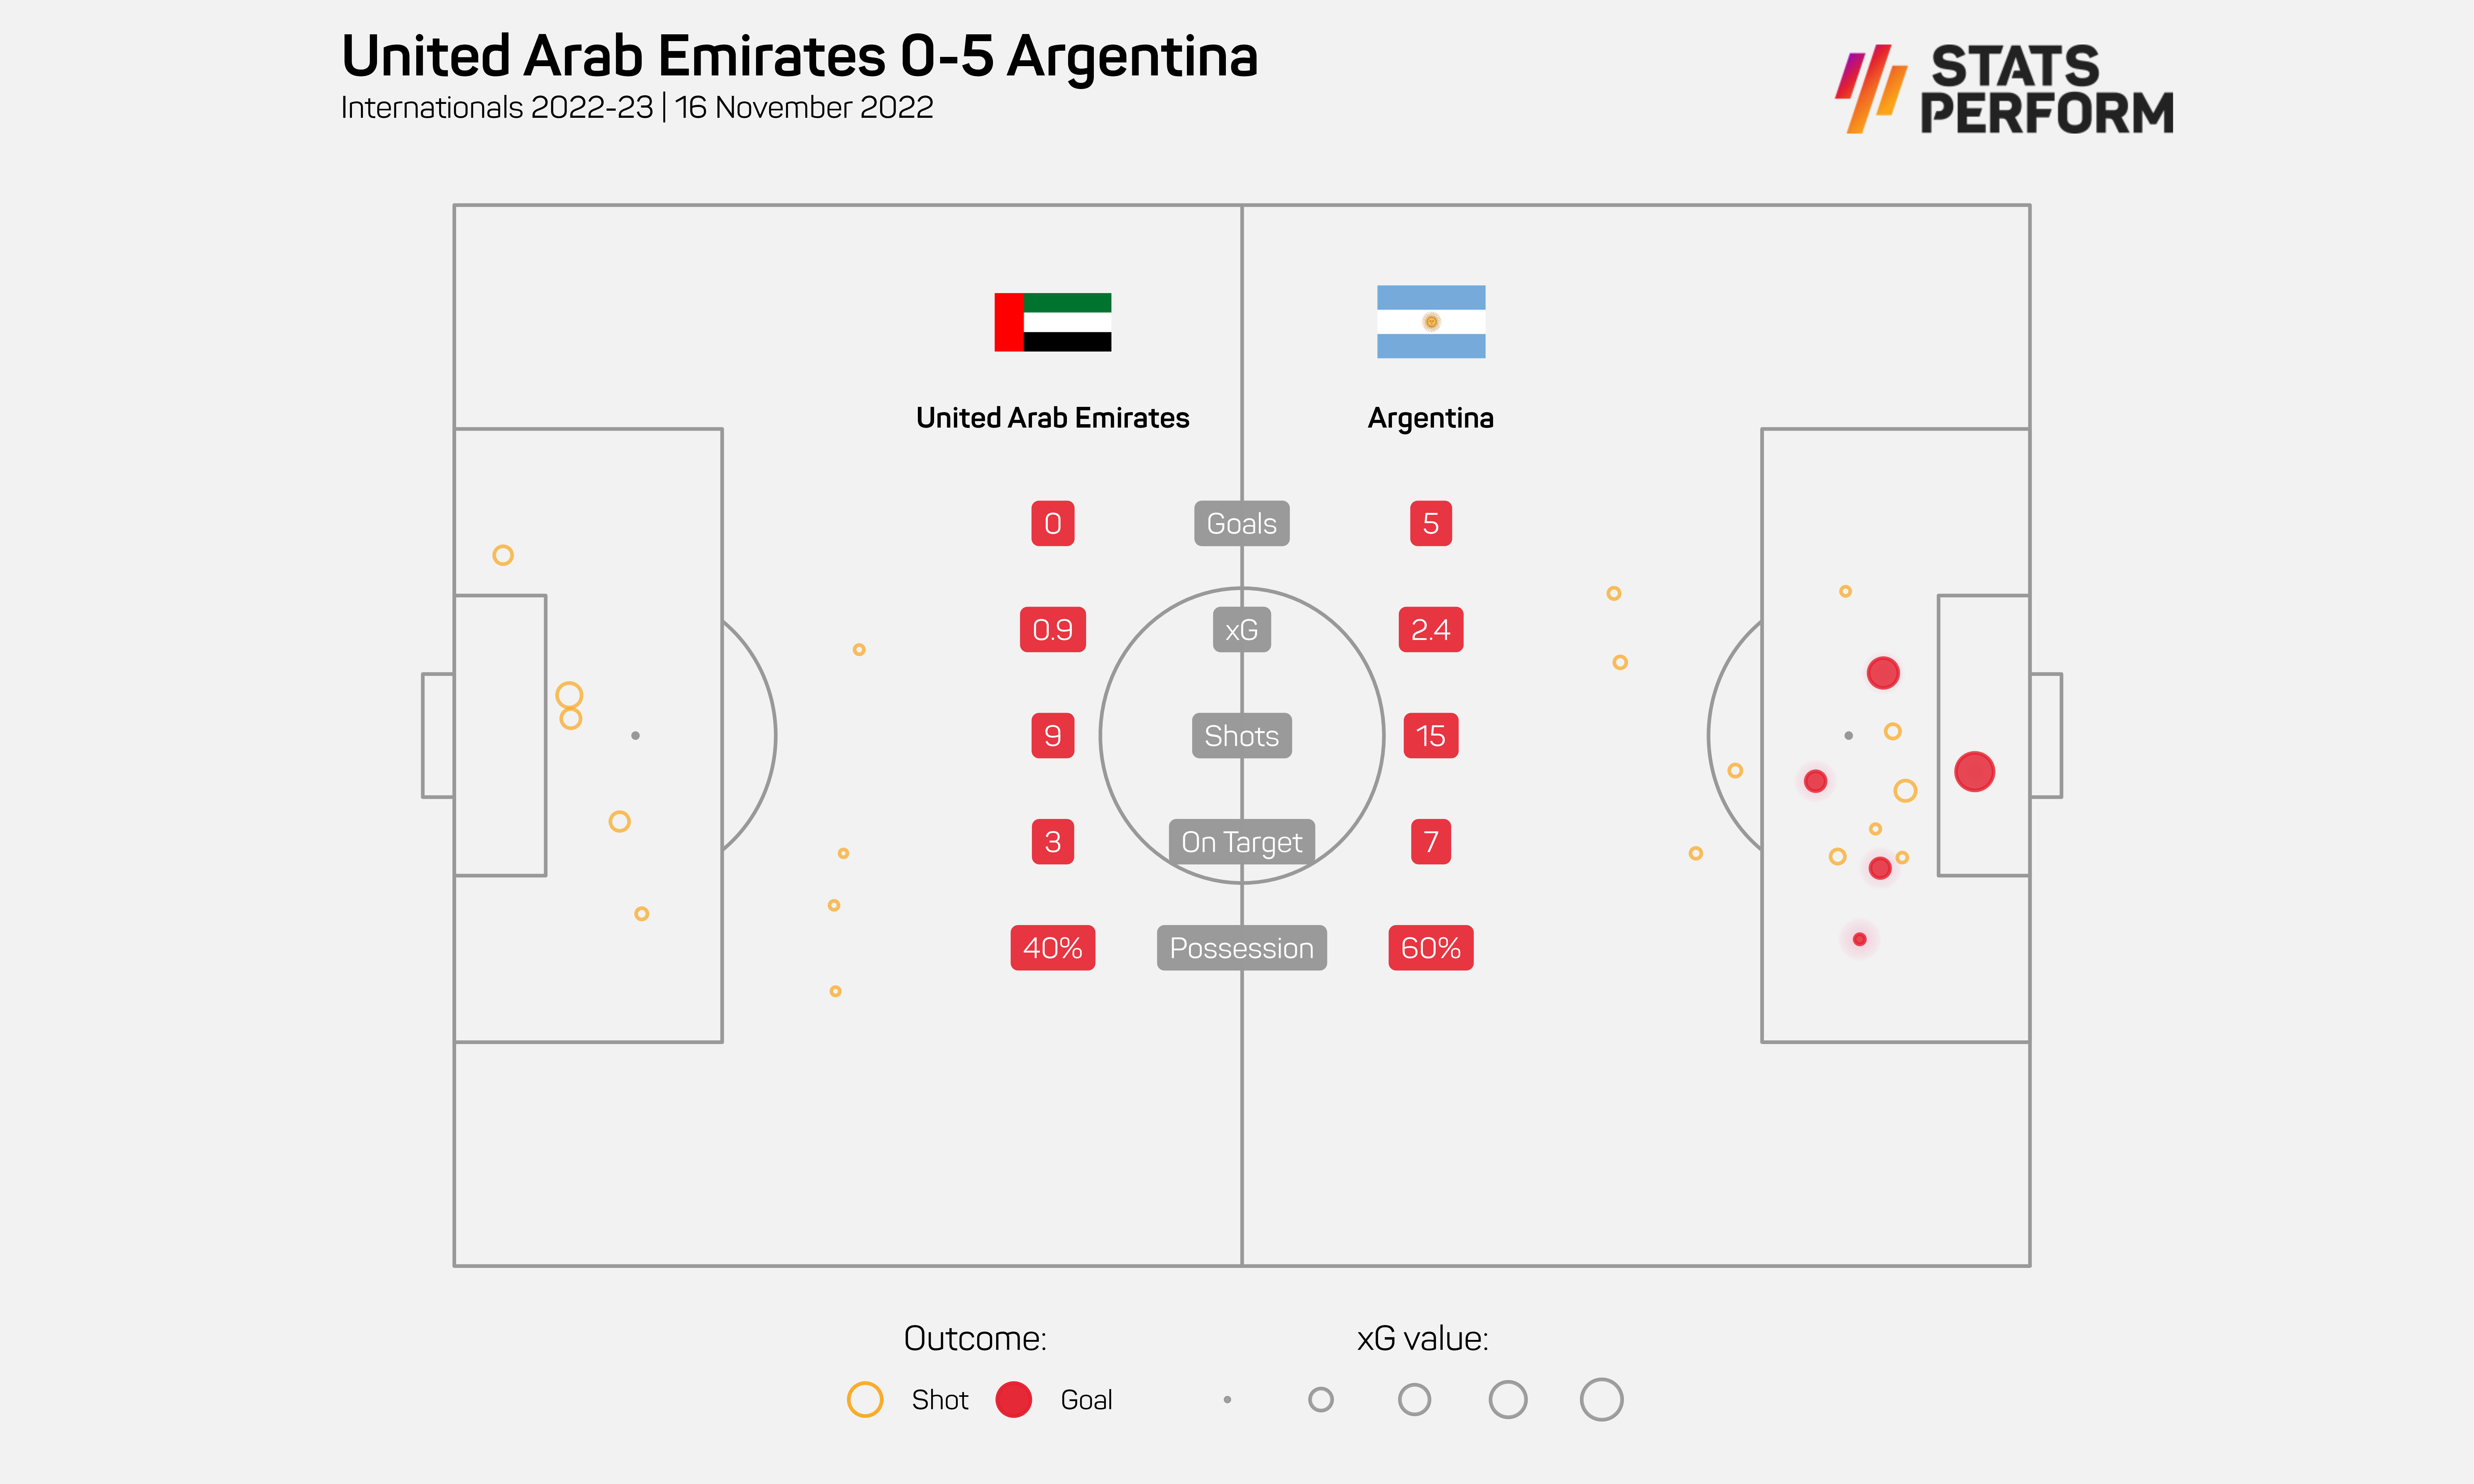 UAE 0-5 Argentina